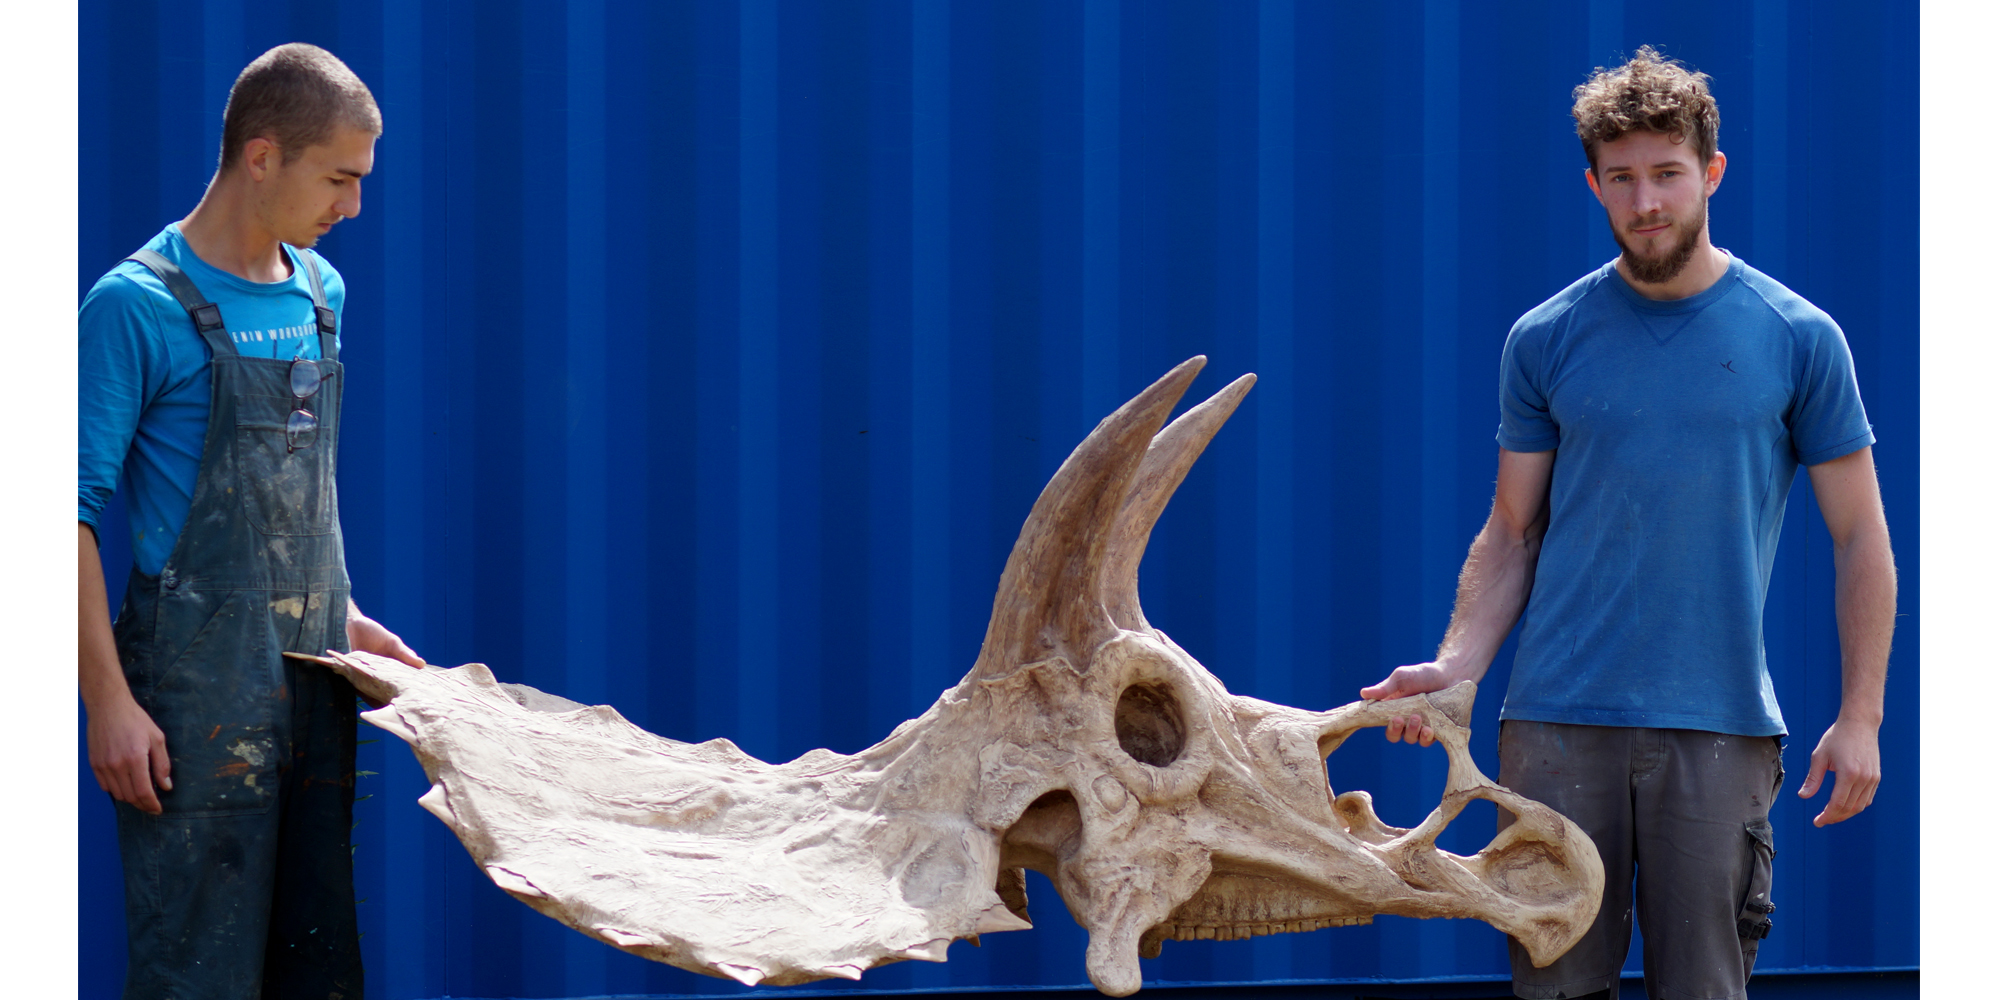 installation d'un fac-simile en résine de crâne de dinosaure fossile résistant et solide grâce à la structure en polystyrène